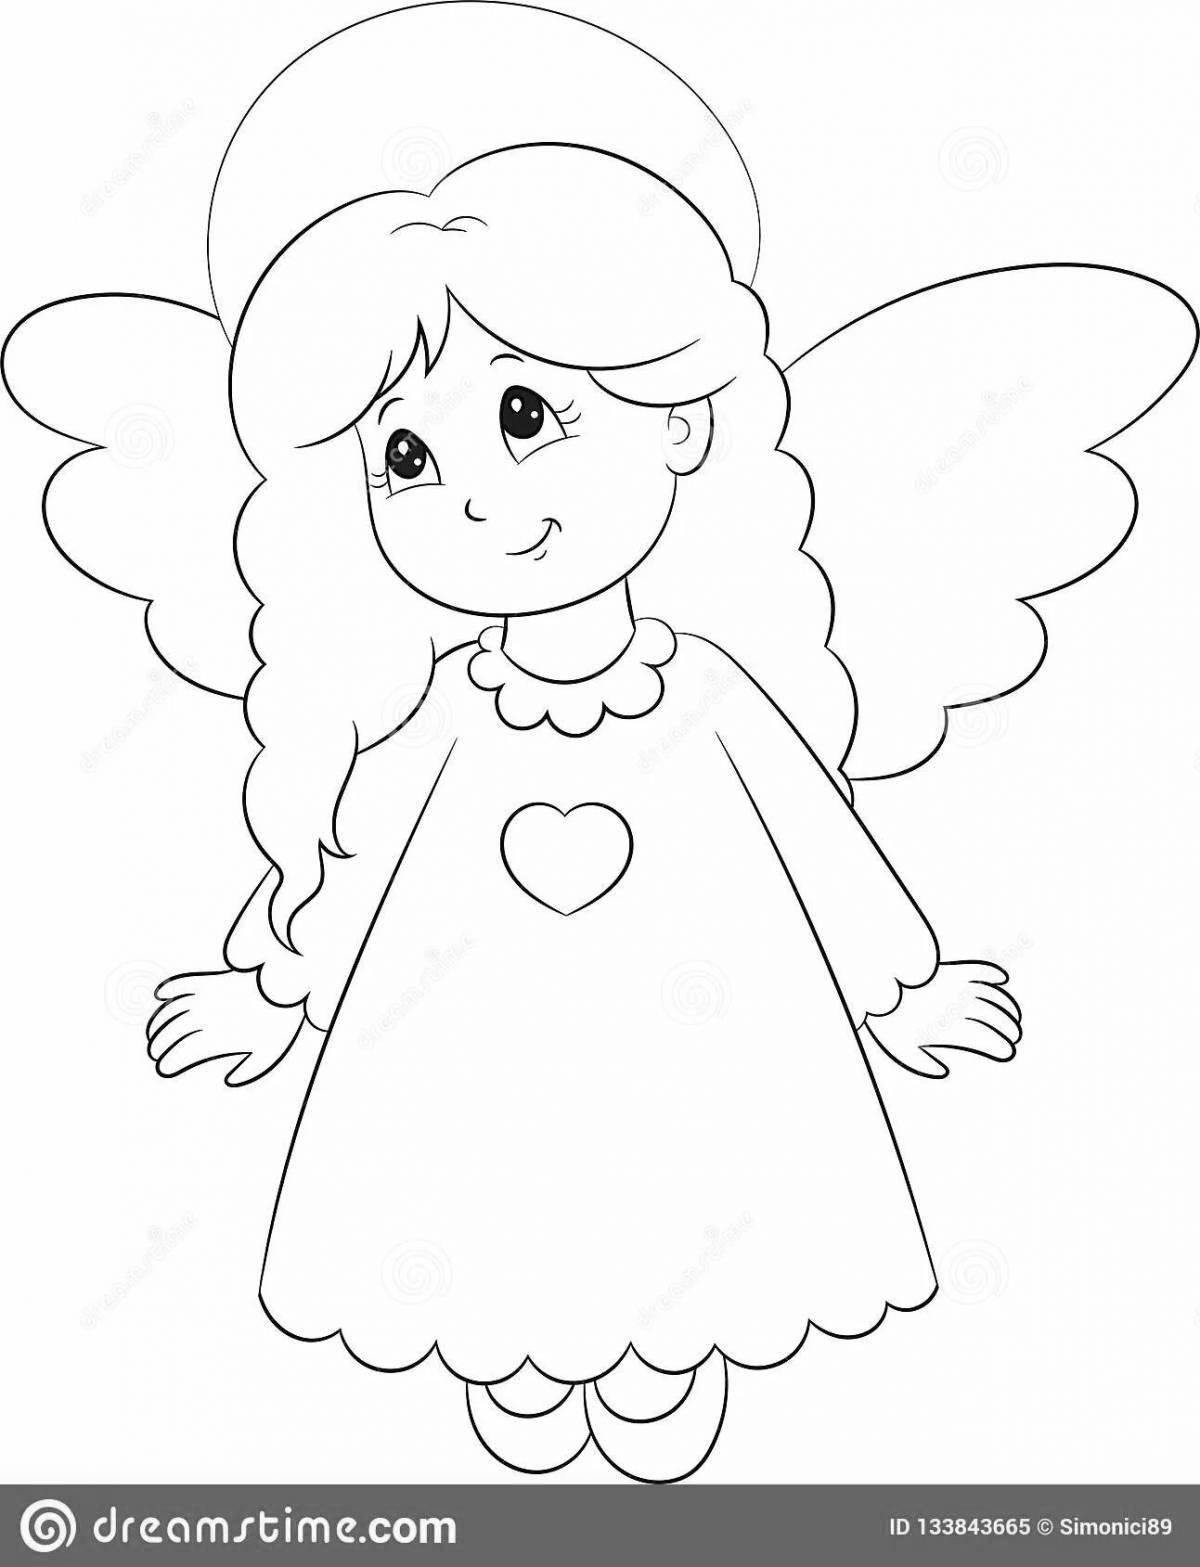 Великолепная раскраска ангел с крыльями для детей